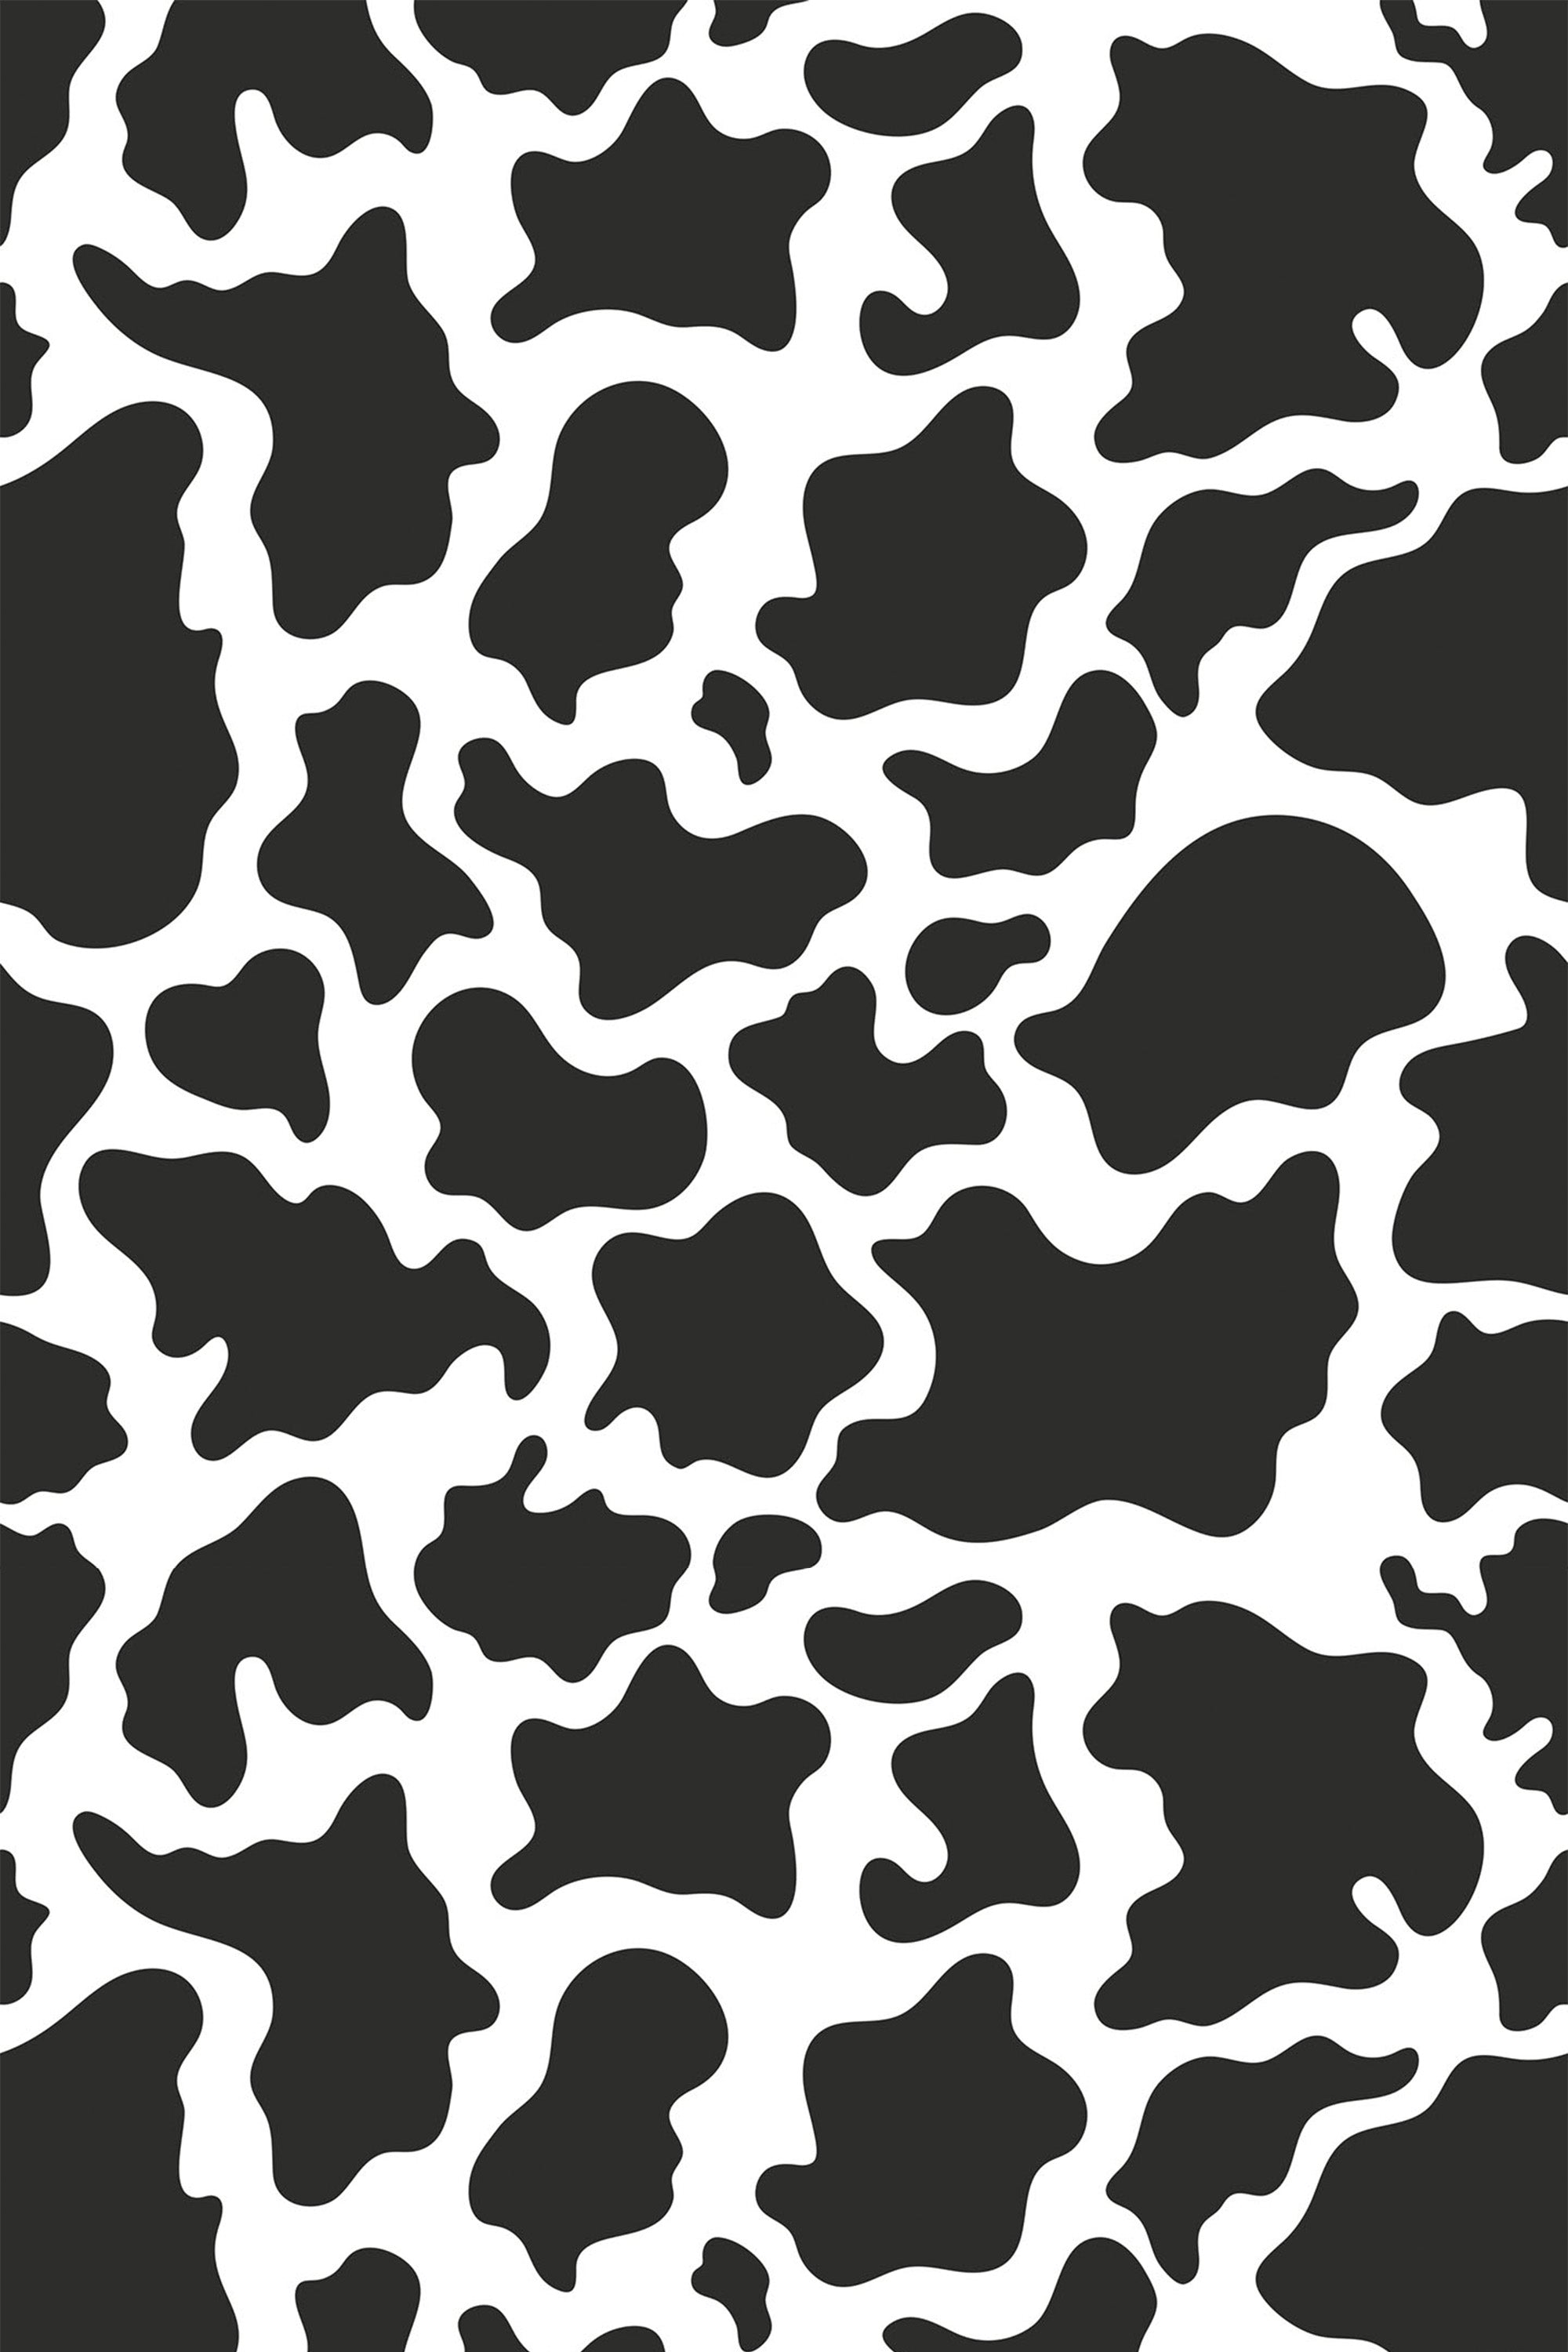 Pastel cow print wallpaper  Cow print wallpaper, Cow wallpaper, Animal print  wallpaper